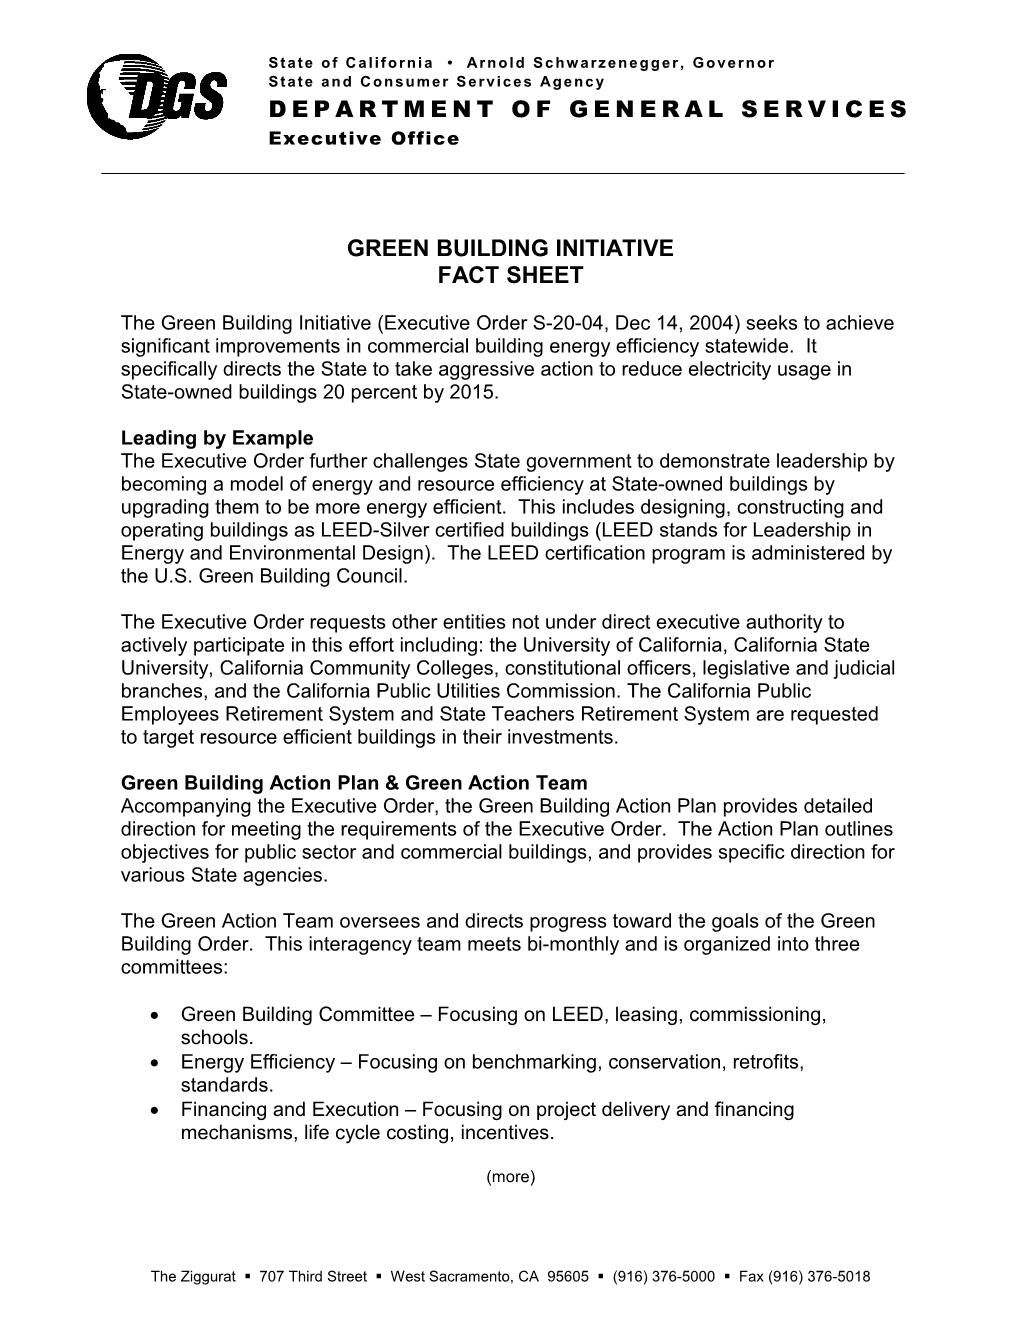 Greenbuilding Initiative Fact Sheet